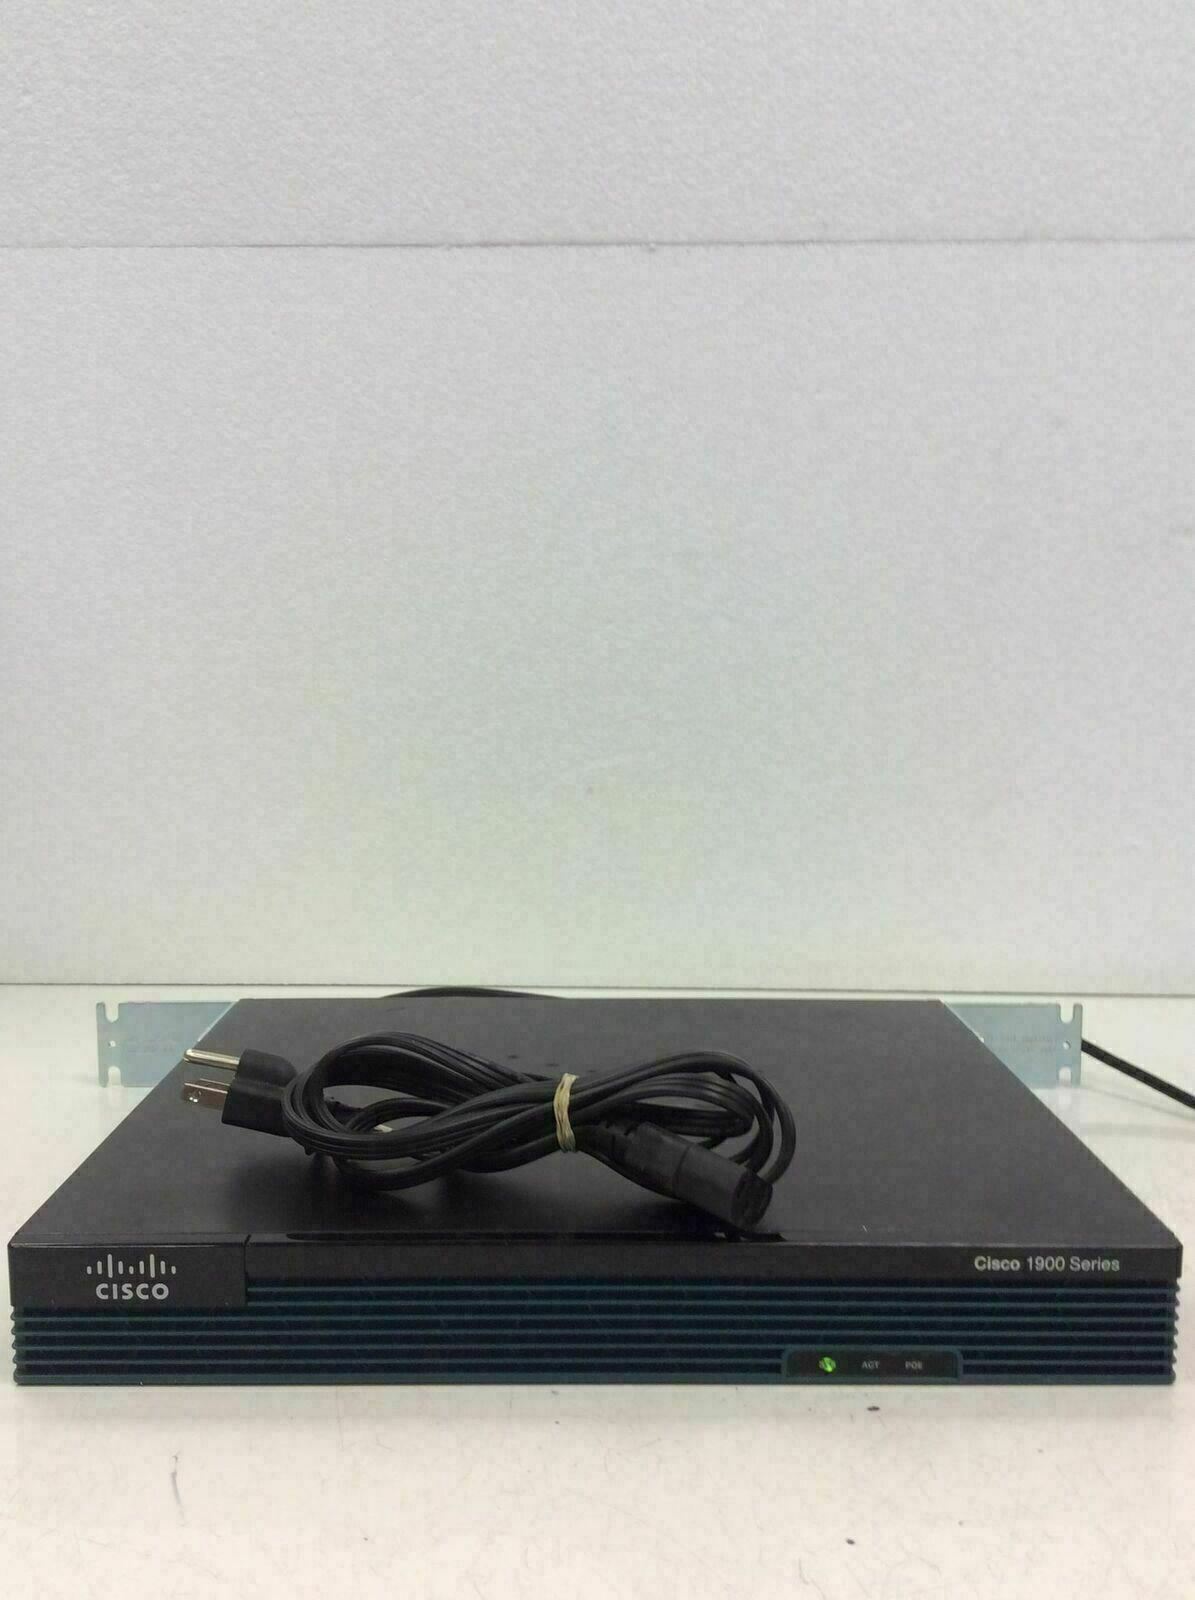 CISCO1921/K9 Router 2 Port IP Base Gigabit Ethernet Server with Rack Mount L@@K